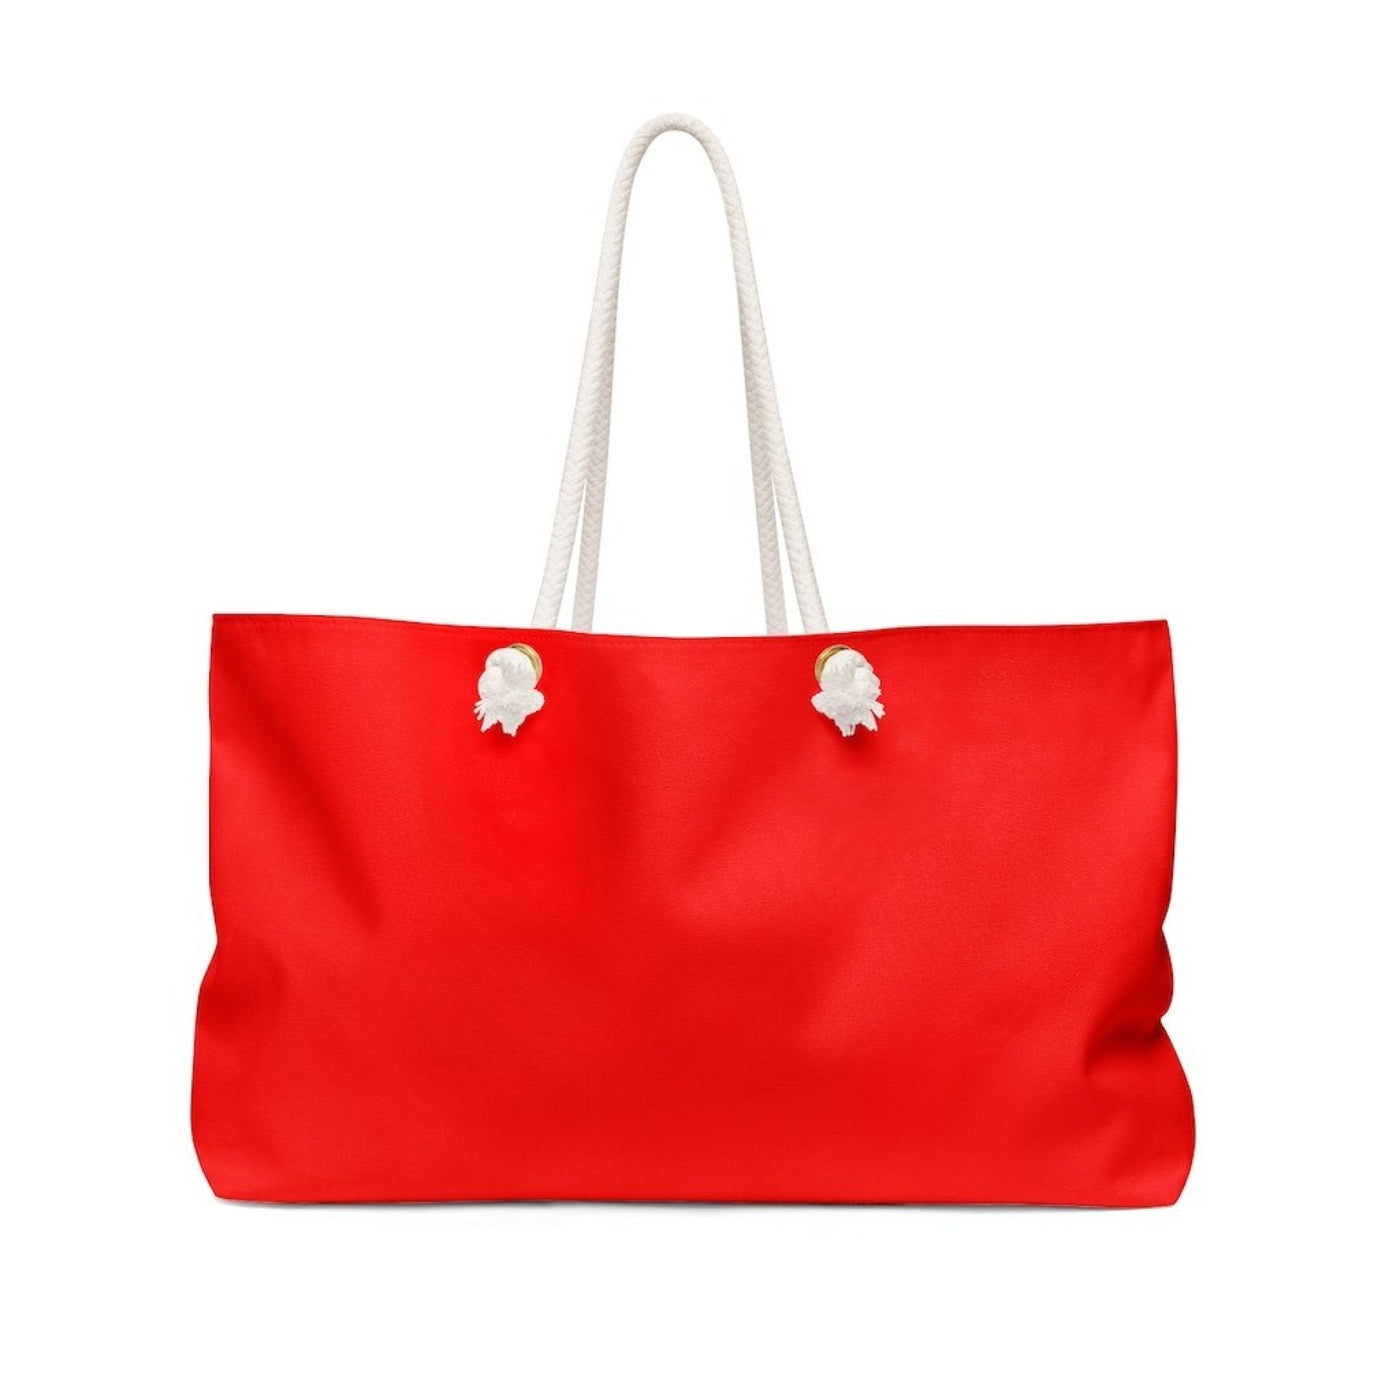 Weekender Tote Bag Red - Bags | Tote Bags | Weekender